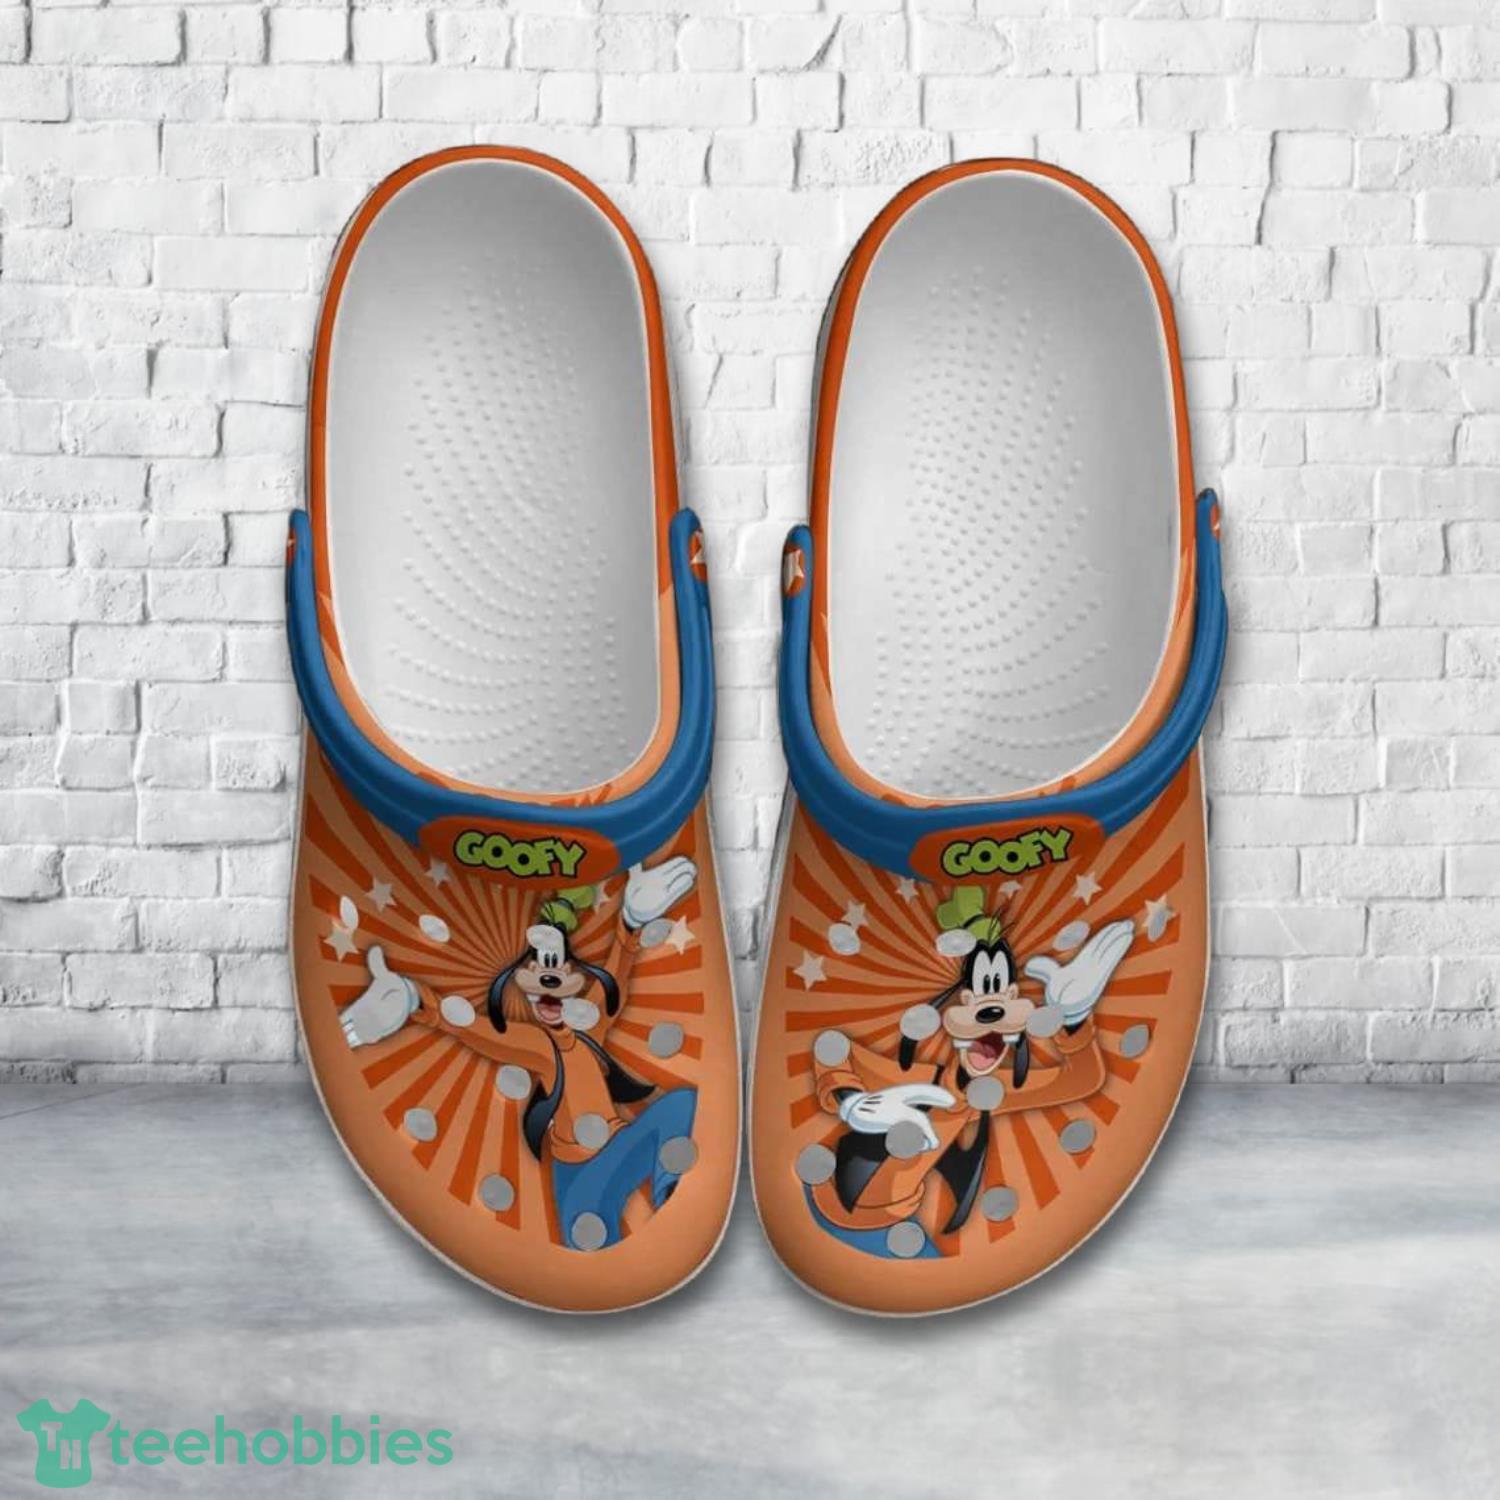 Goofy Dog Vintage Orange Blue Disney Clog Shoes Product Photo 1